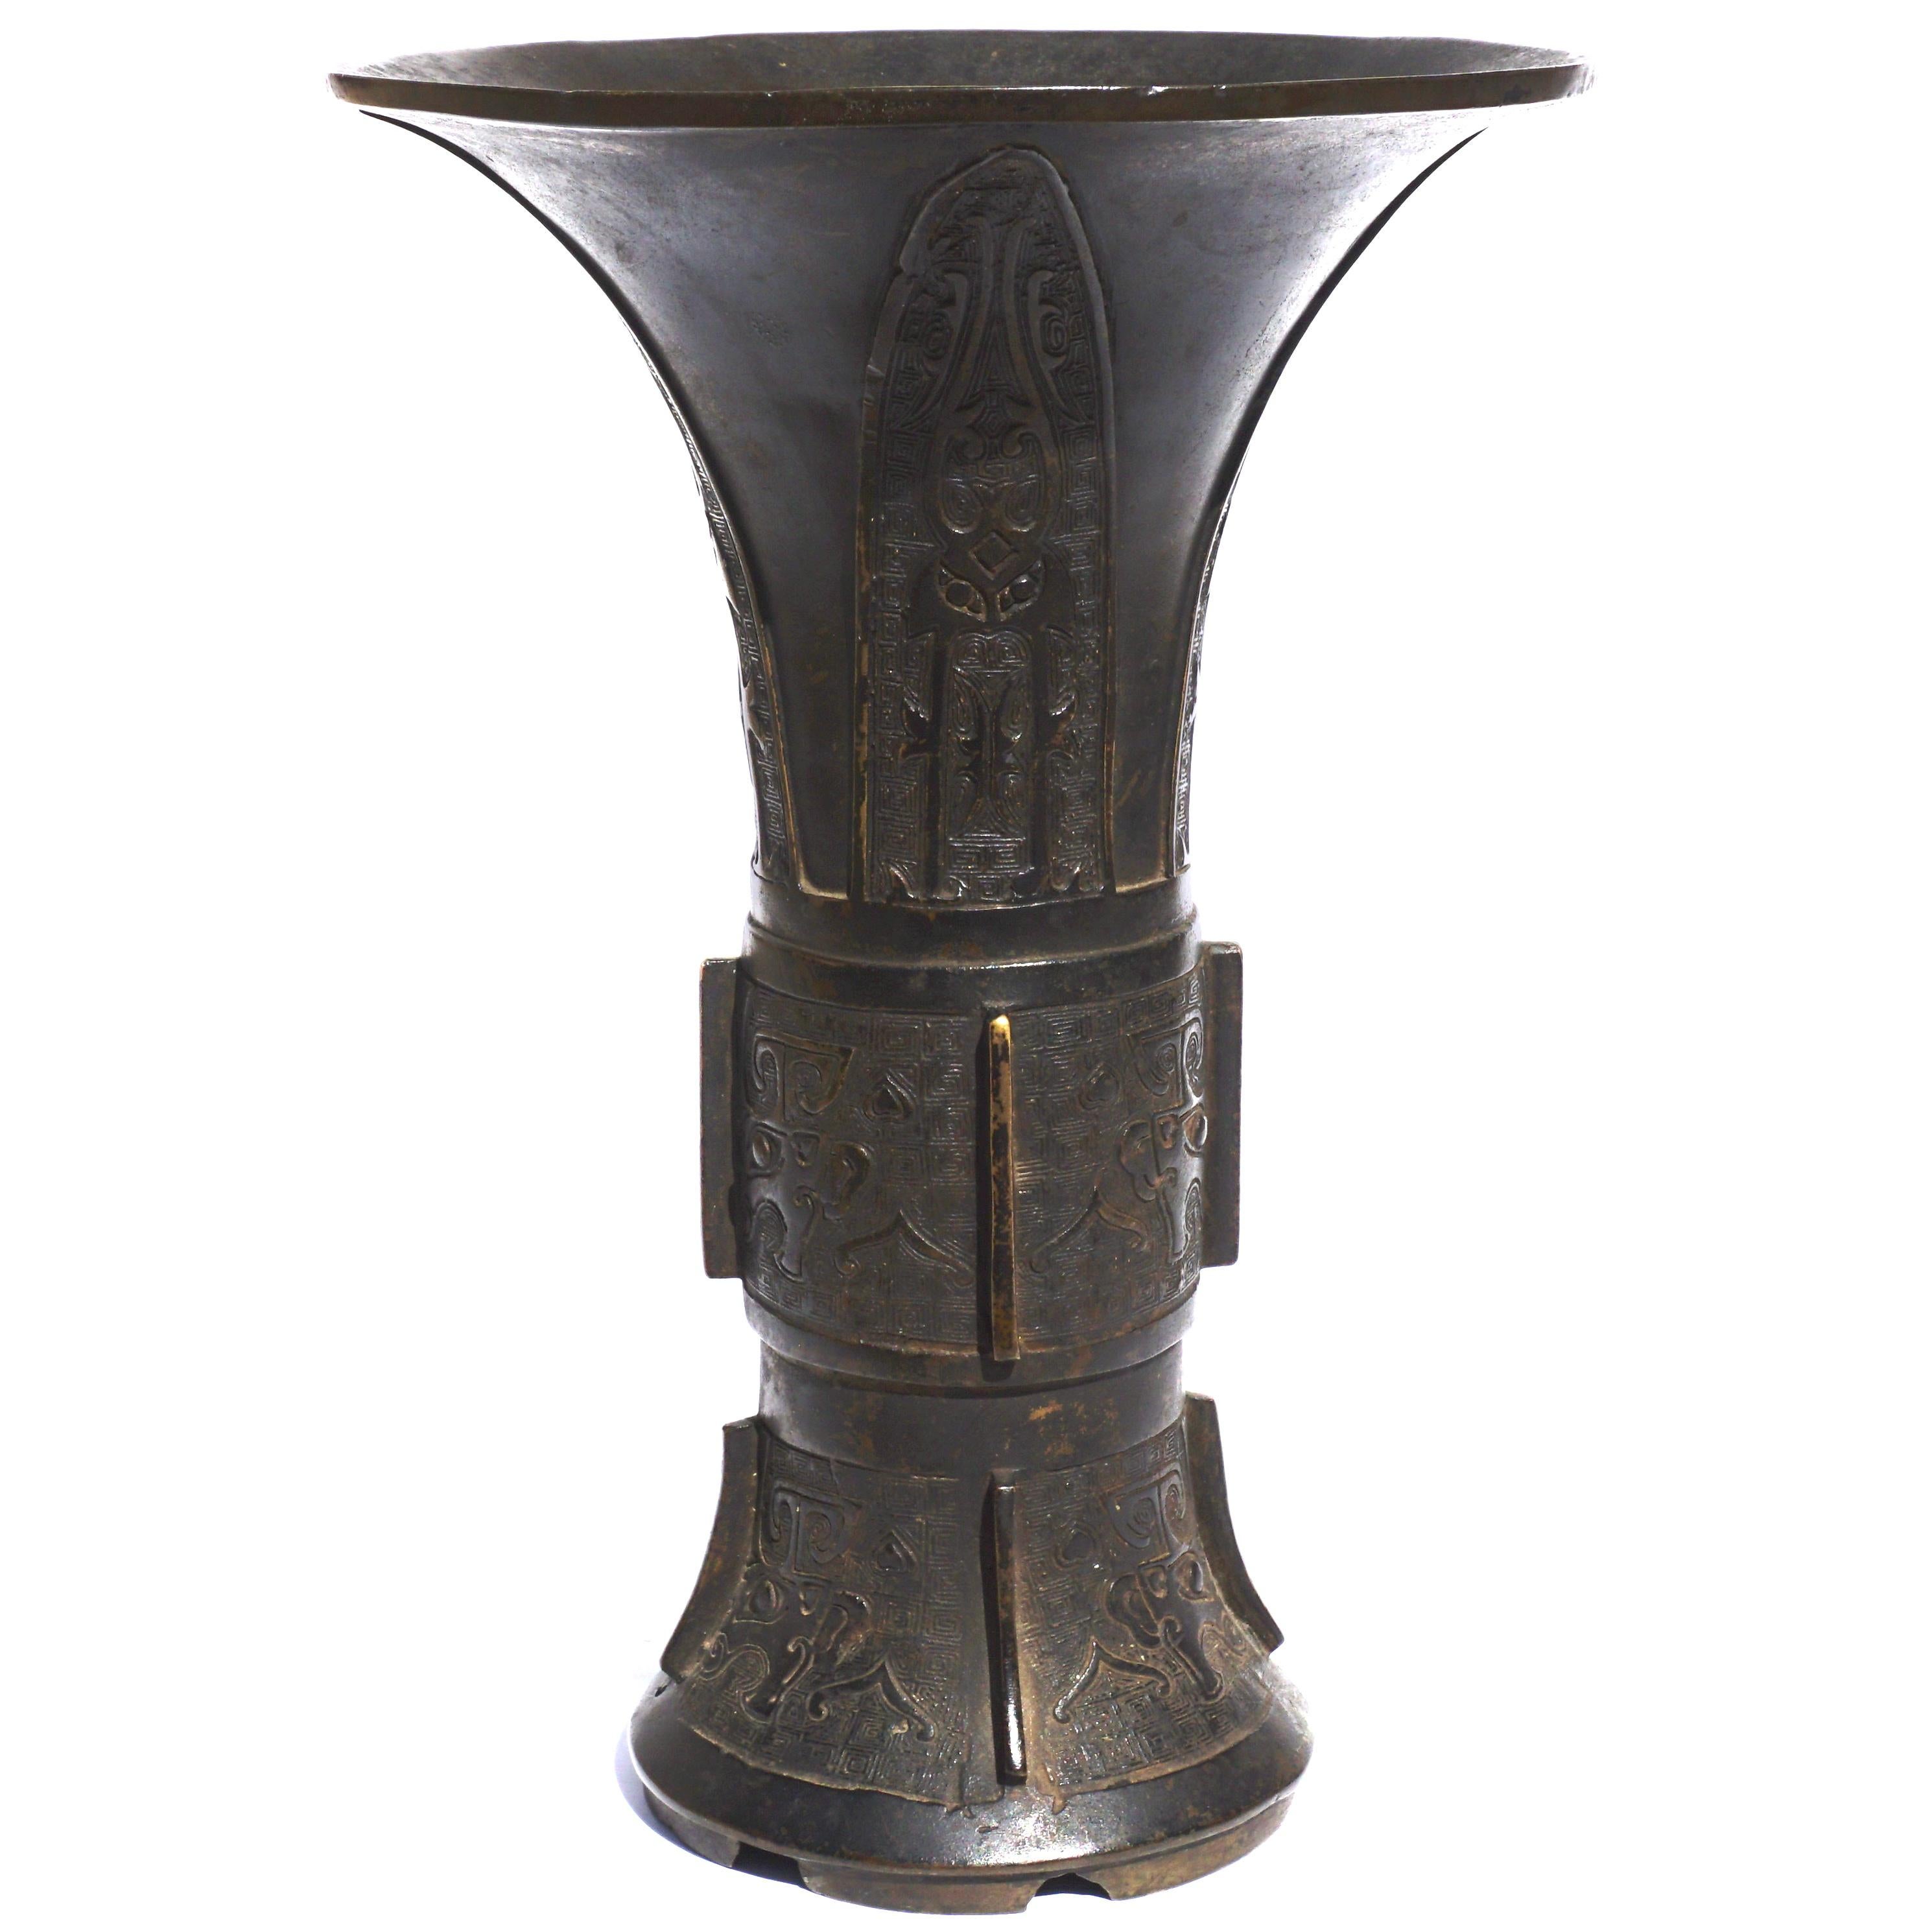 Chinesische Bronzevase, Gu, der trompetenförmige obere Teil ist mit vier Klingen gegossen, die mit archaischen Motiven gefüllt sind. In der Mitte und im unteren Teil sind Toadies mit sehr komplizierten Hintergründen abgebildet. Mit einer schönen